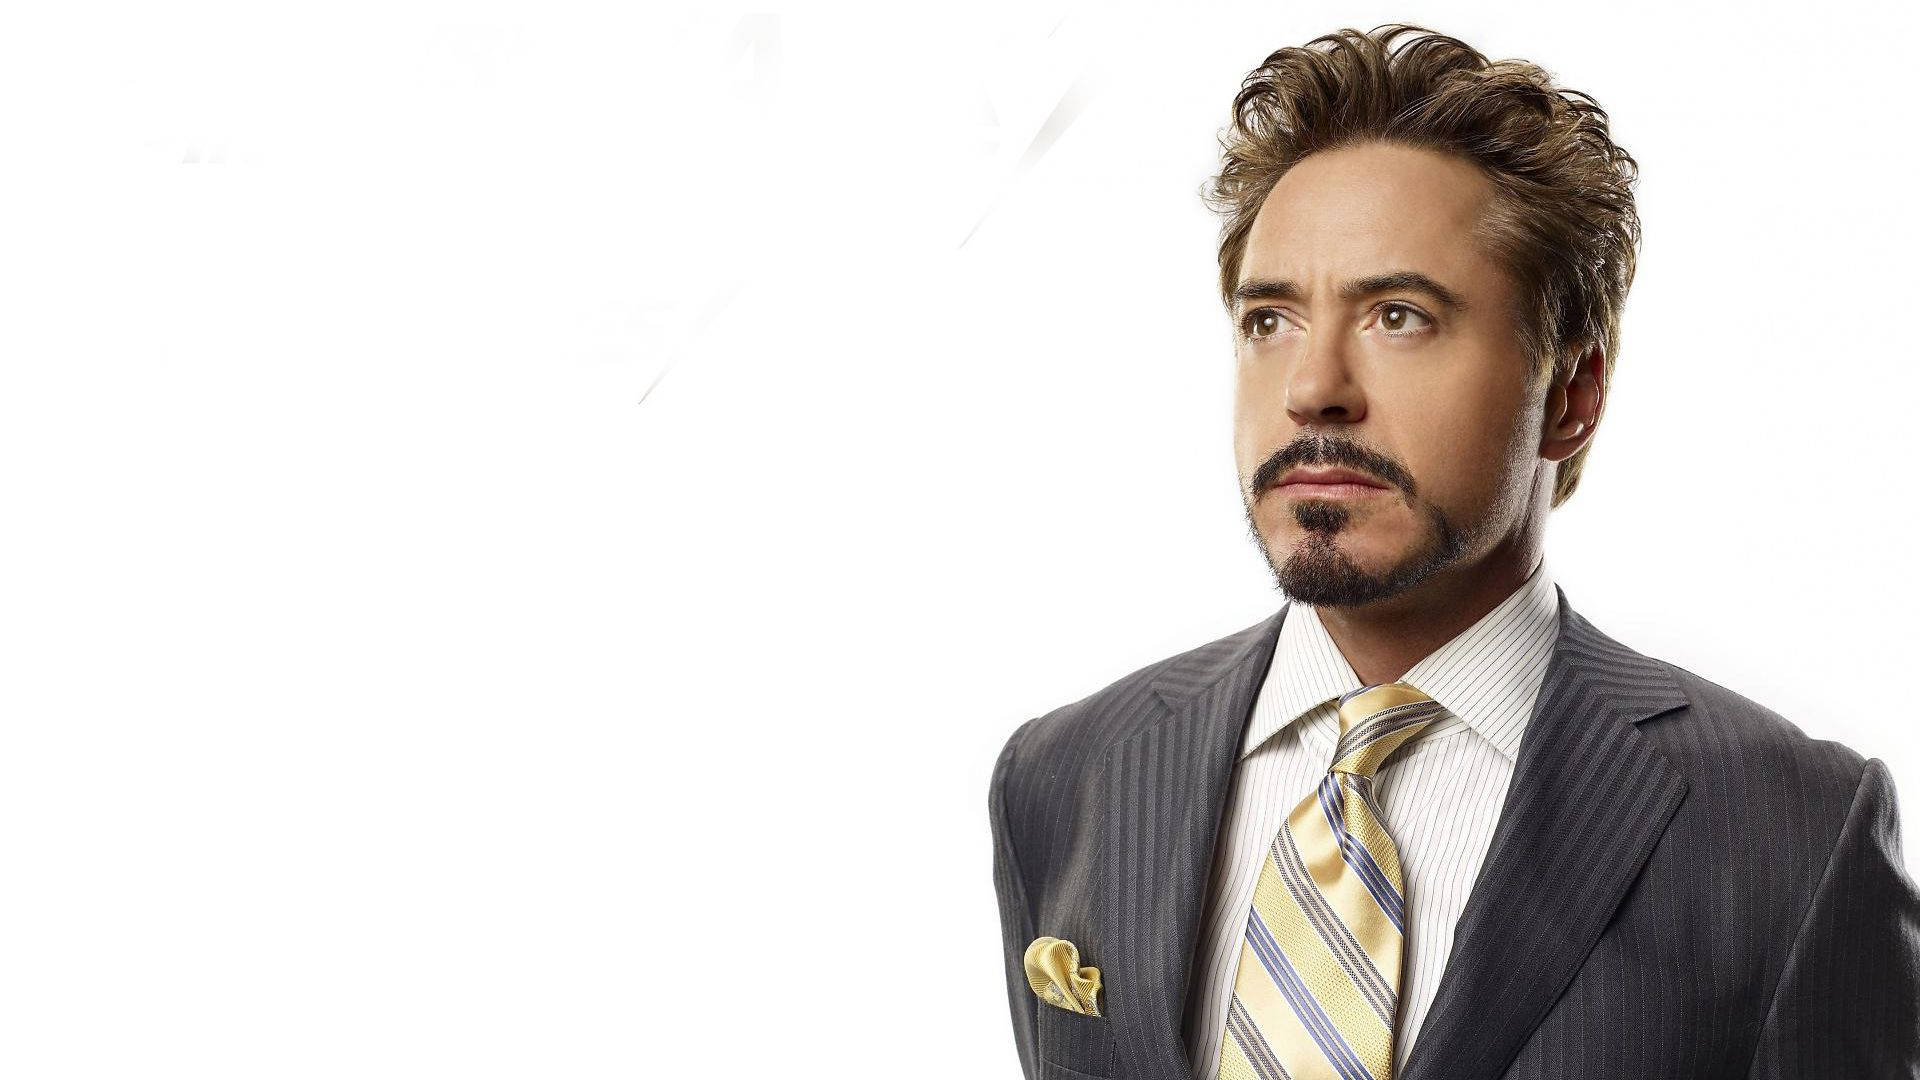 Gold Necktie Robert Downey Jr.